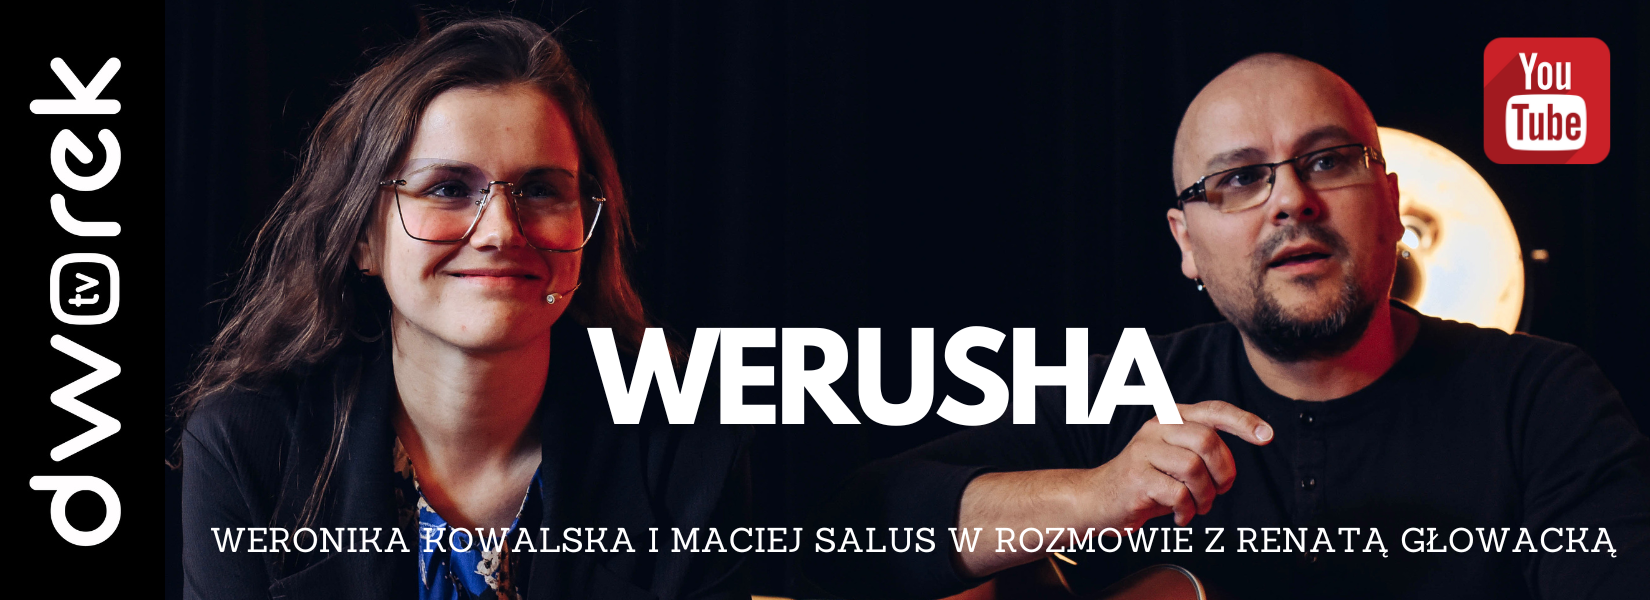 Świat na głowie | Weronika Kowalska i Maciej Salus